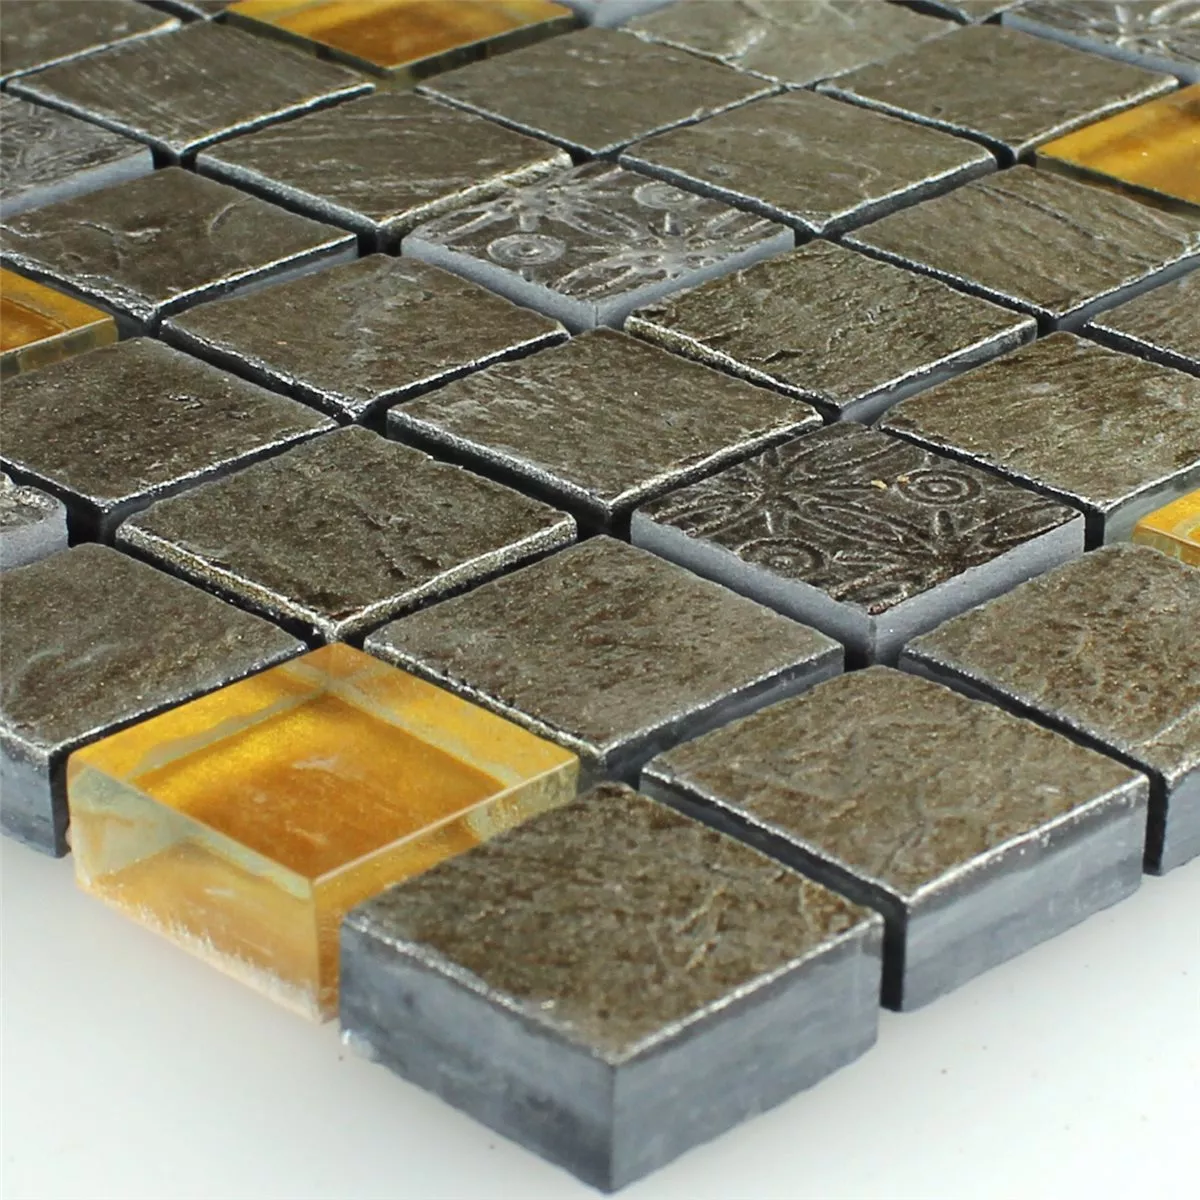 Muster von Mosaikfliesen Glas Naturstein Grau Orange